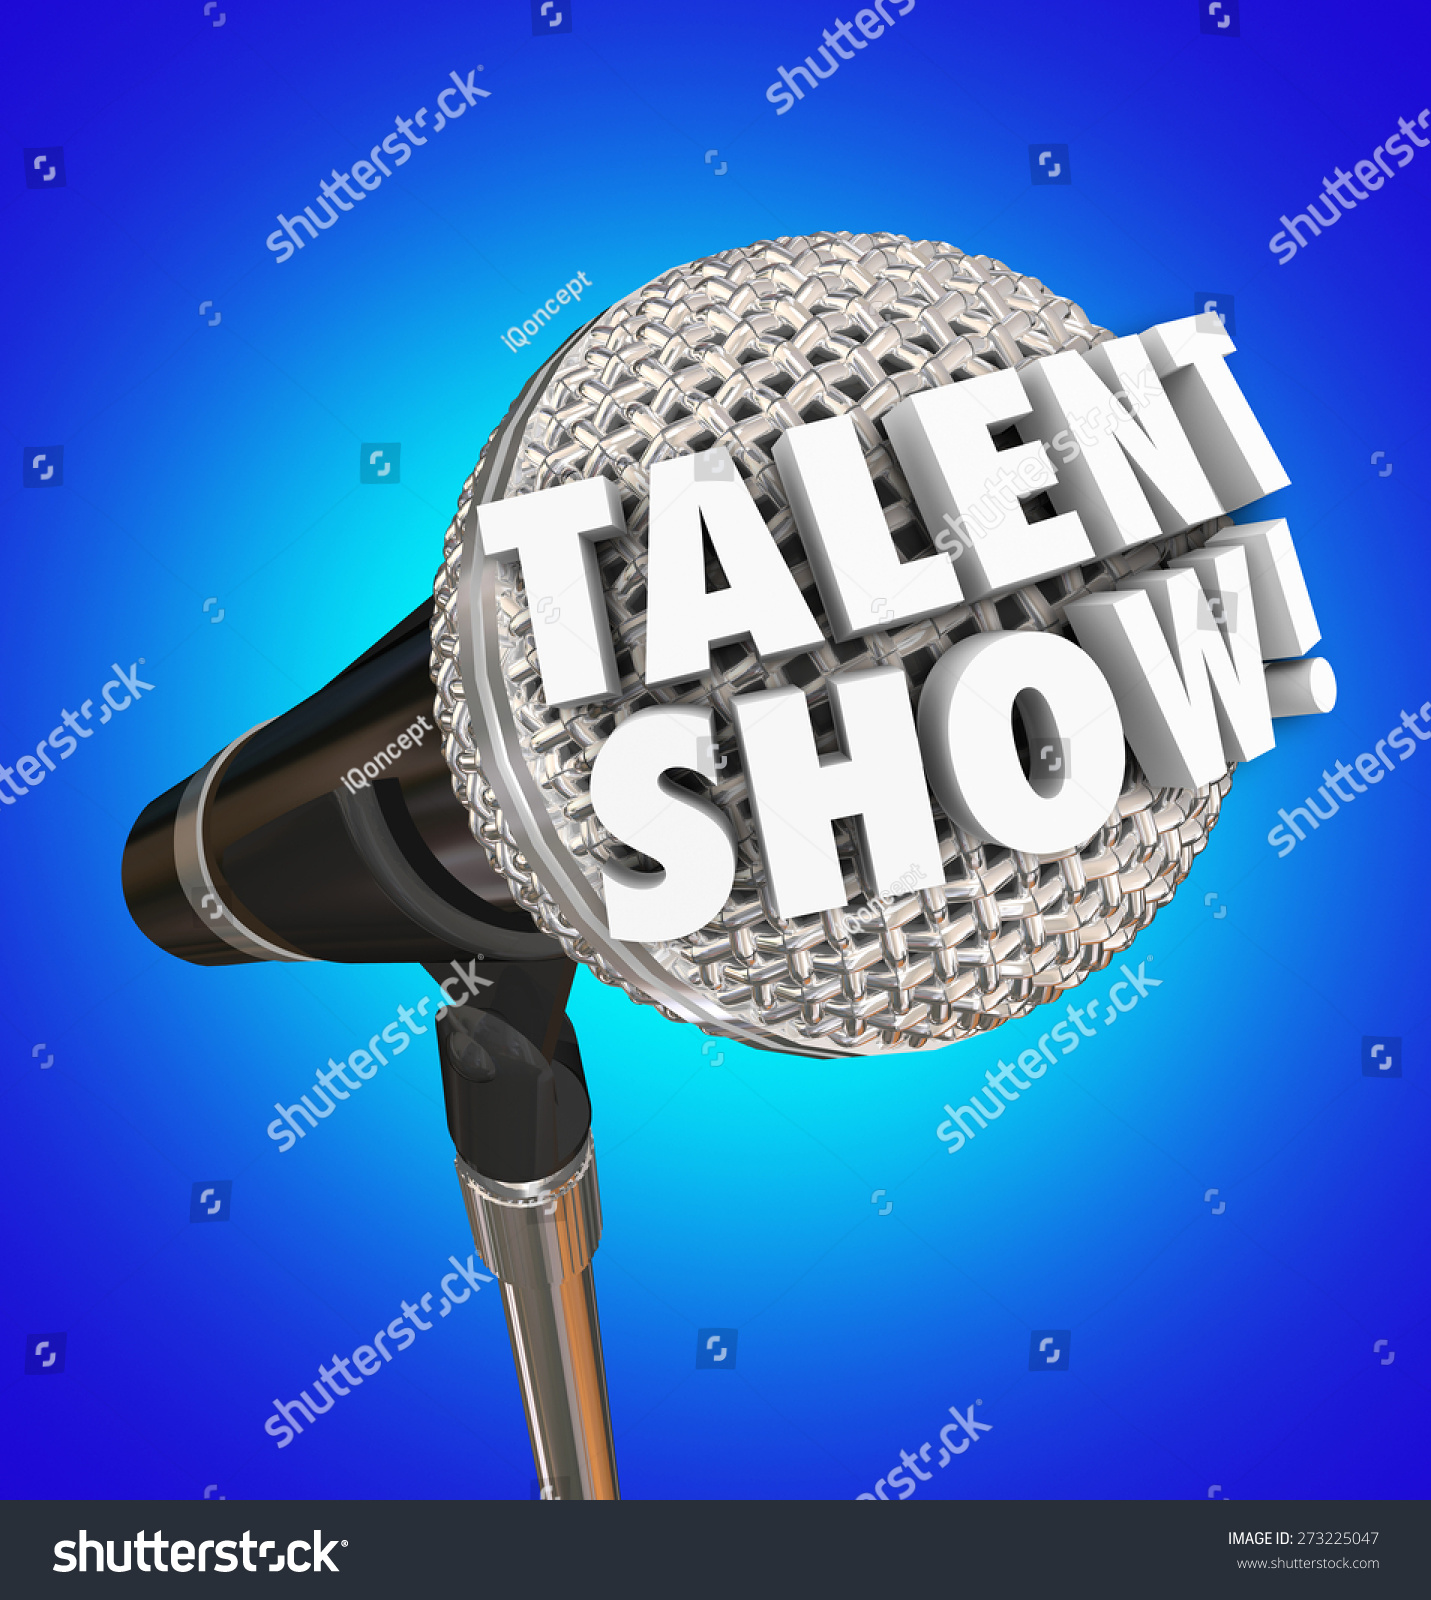 Image result for talent show symbols